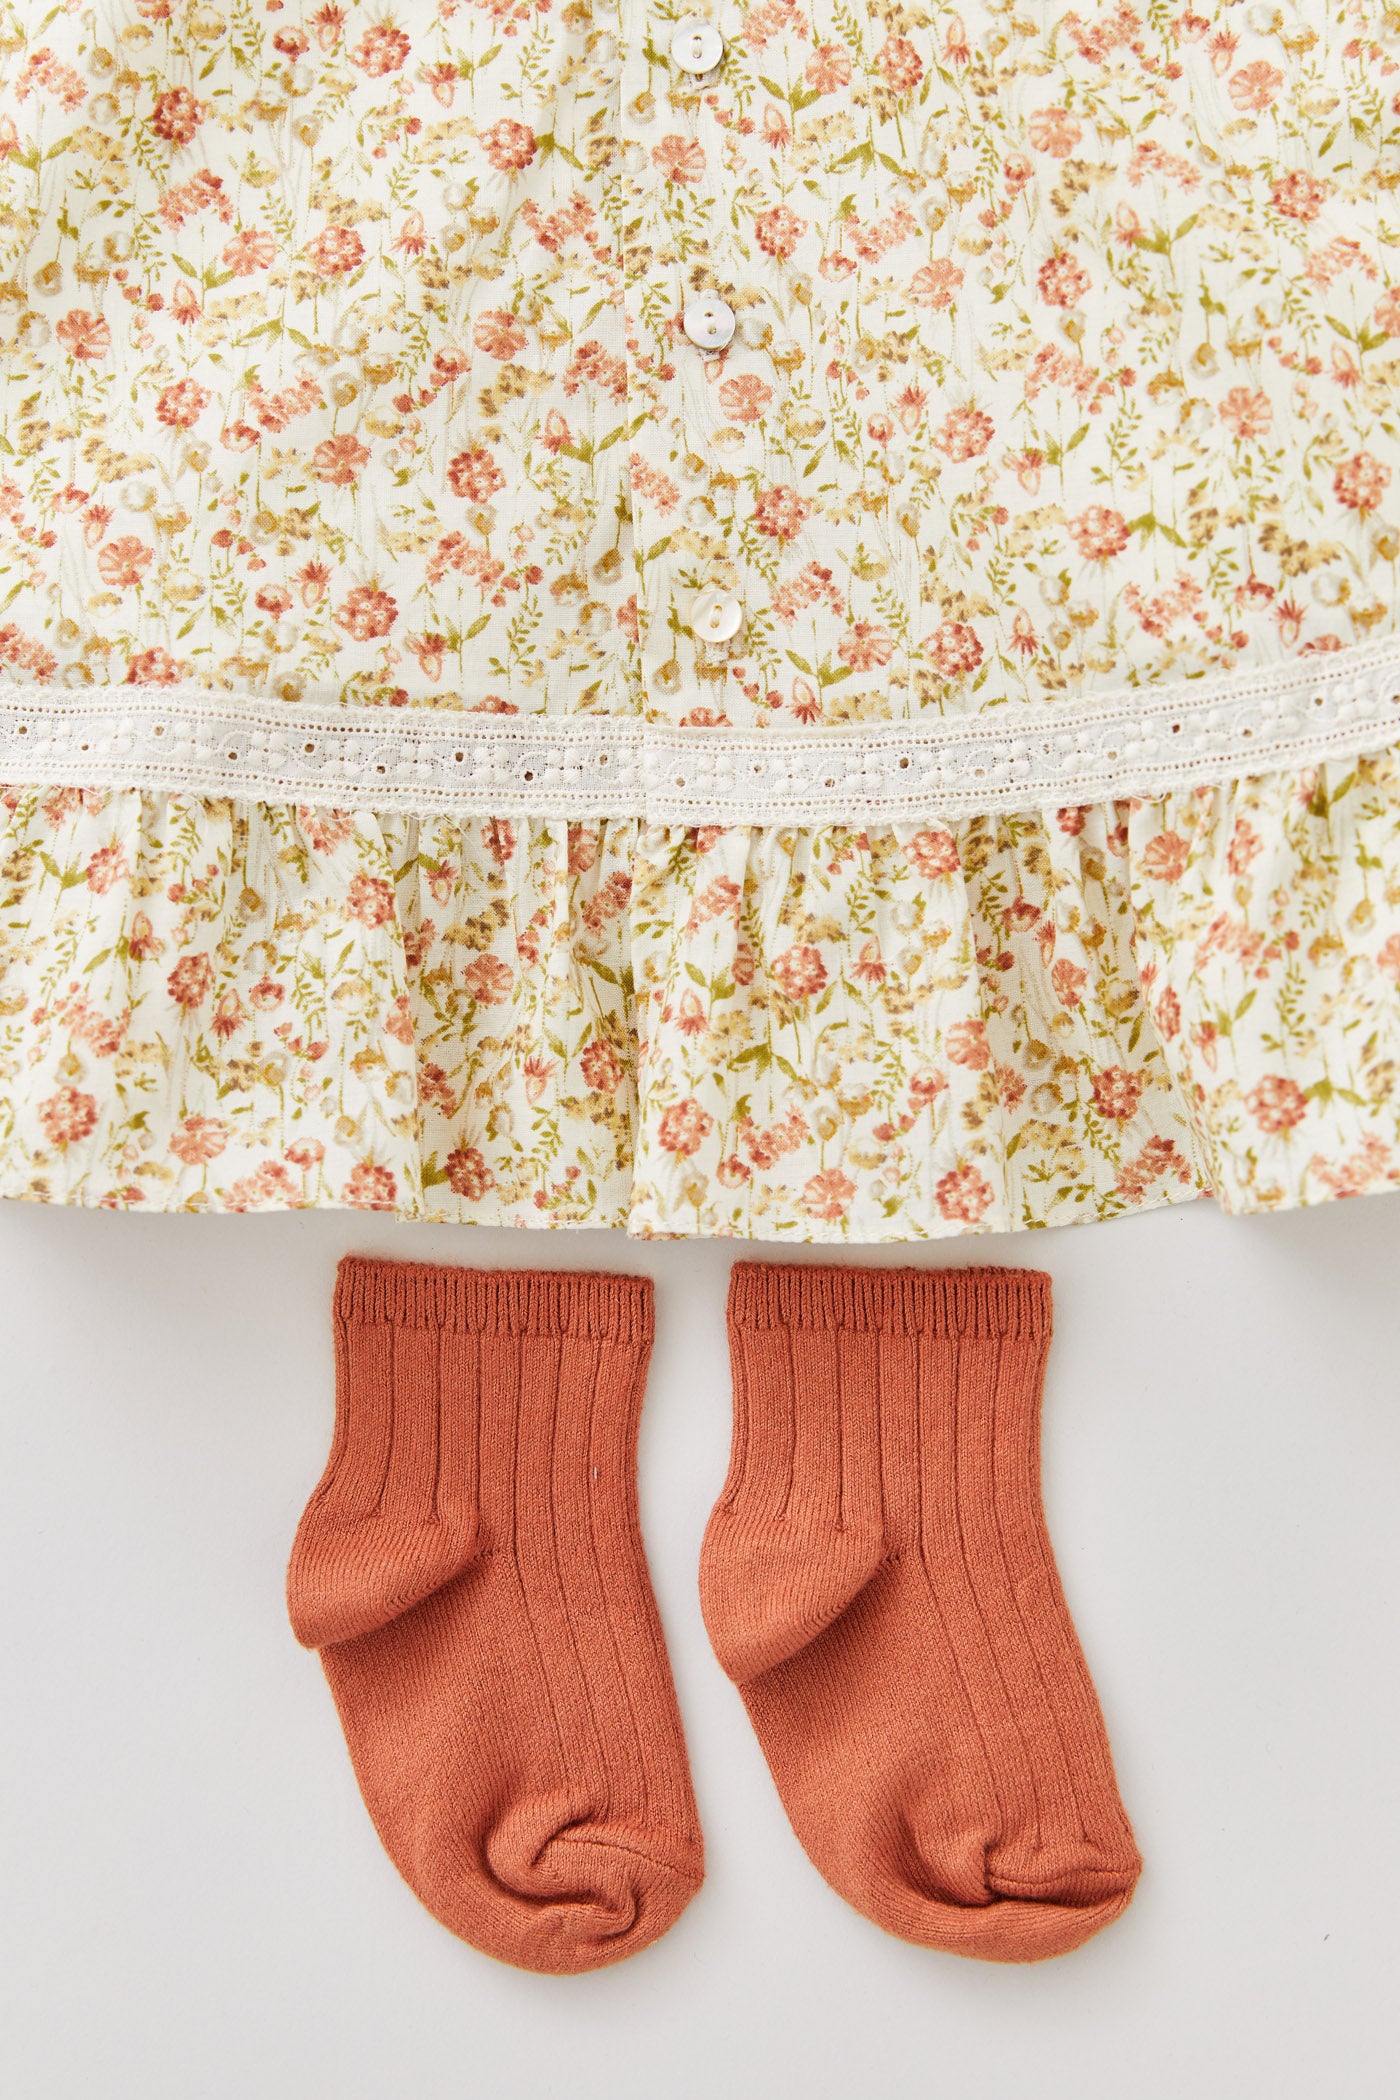 Baby Milkshake Dress in Beige Tangerine Flowers - Designed by Ingrid Lewis - Strawberries & Cream